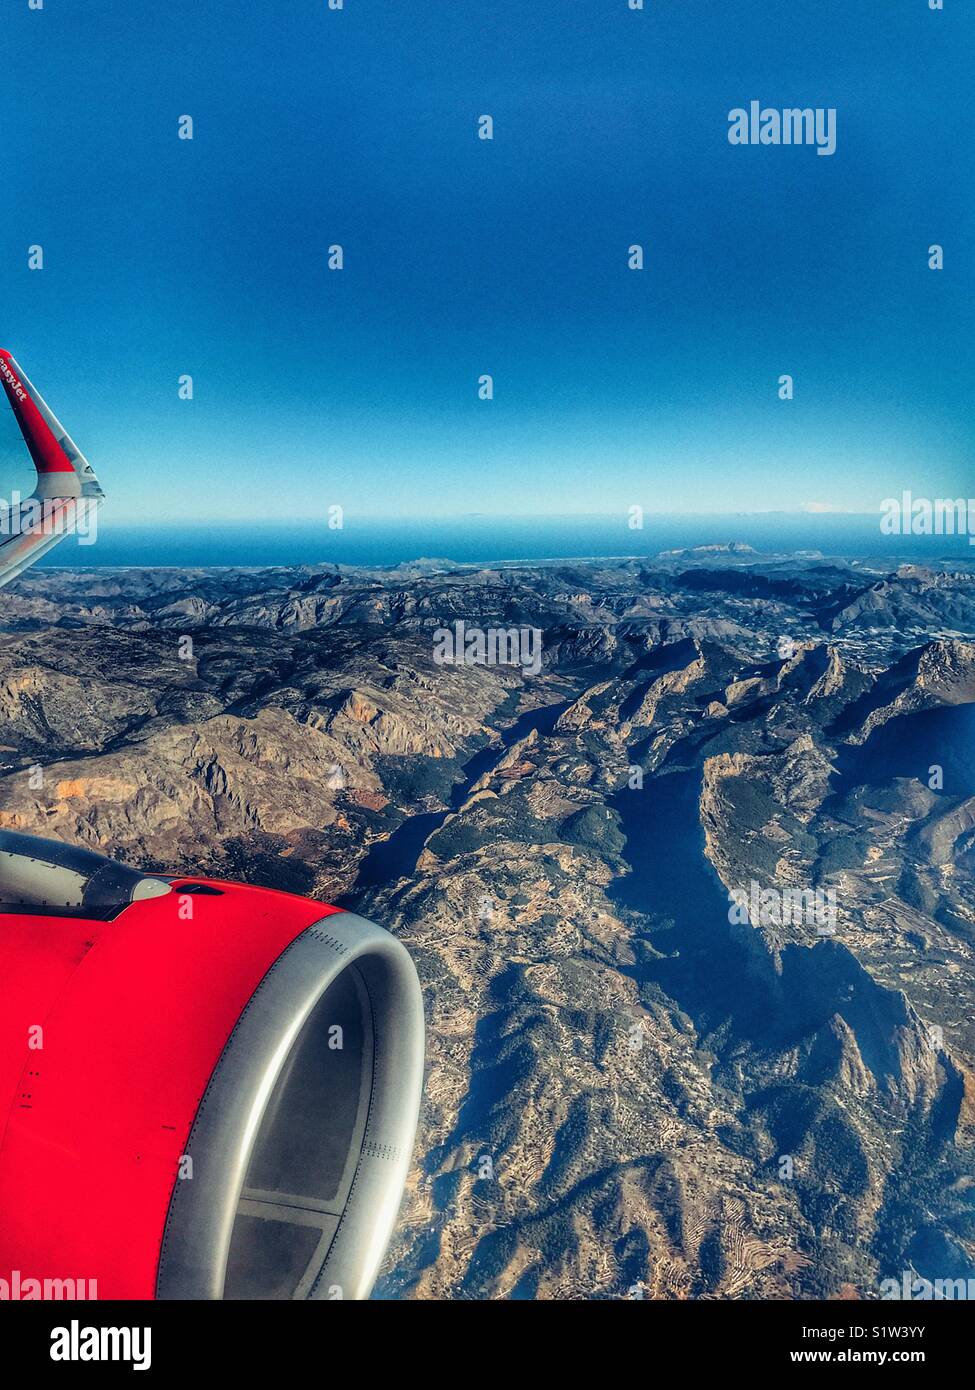 Vista dall'aereo EasyJet con punta ala e motore, guardando la costa mediterranea della Spagna con la località di Javea e Monte Montgo sulla Costa Blanca visibile Foto Stock